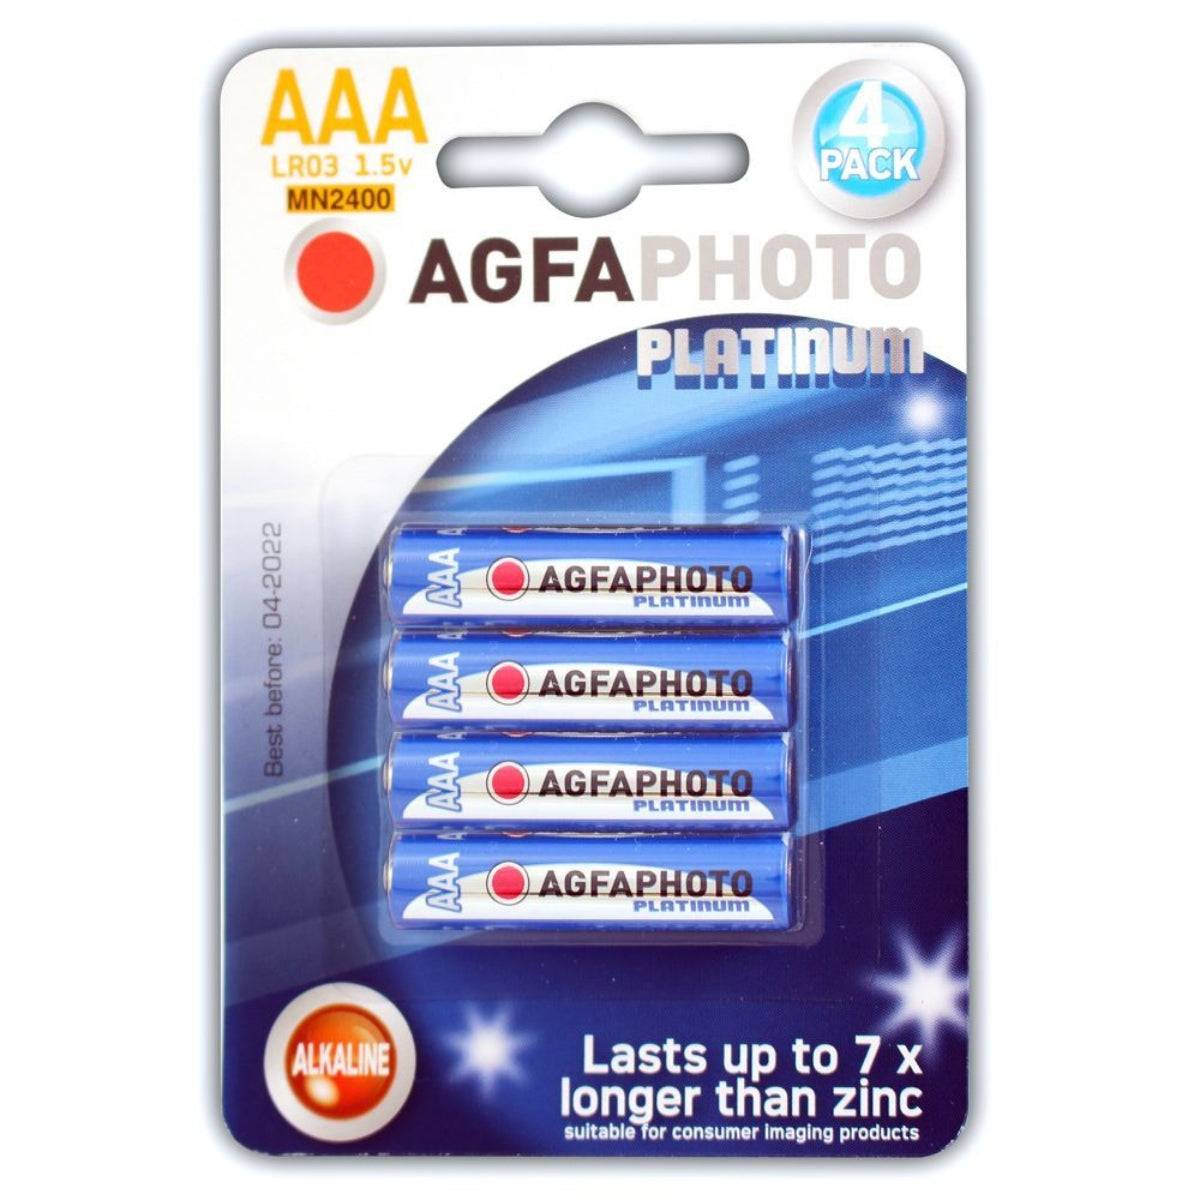 AGFA Photo Platinum AAA Batteries 4 Pack - Simply Pleasure